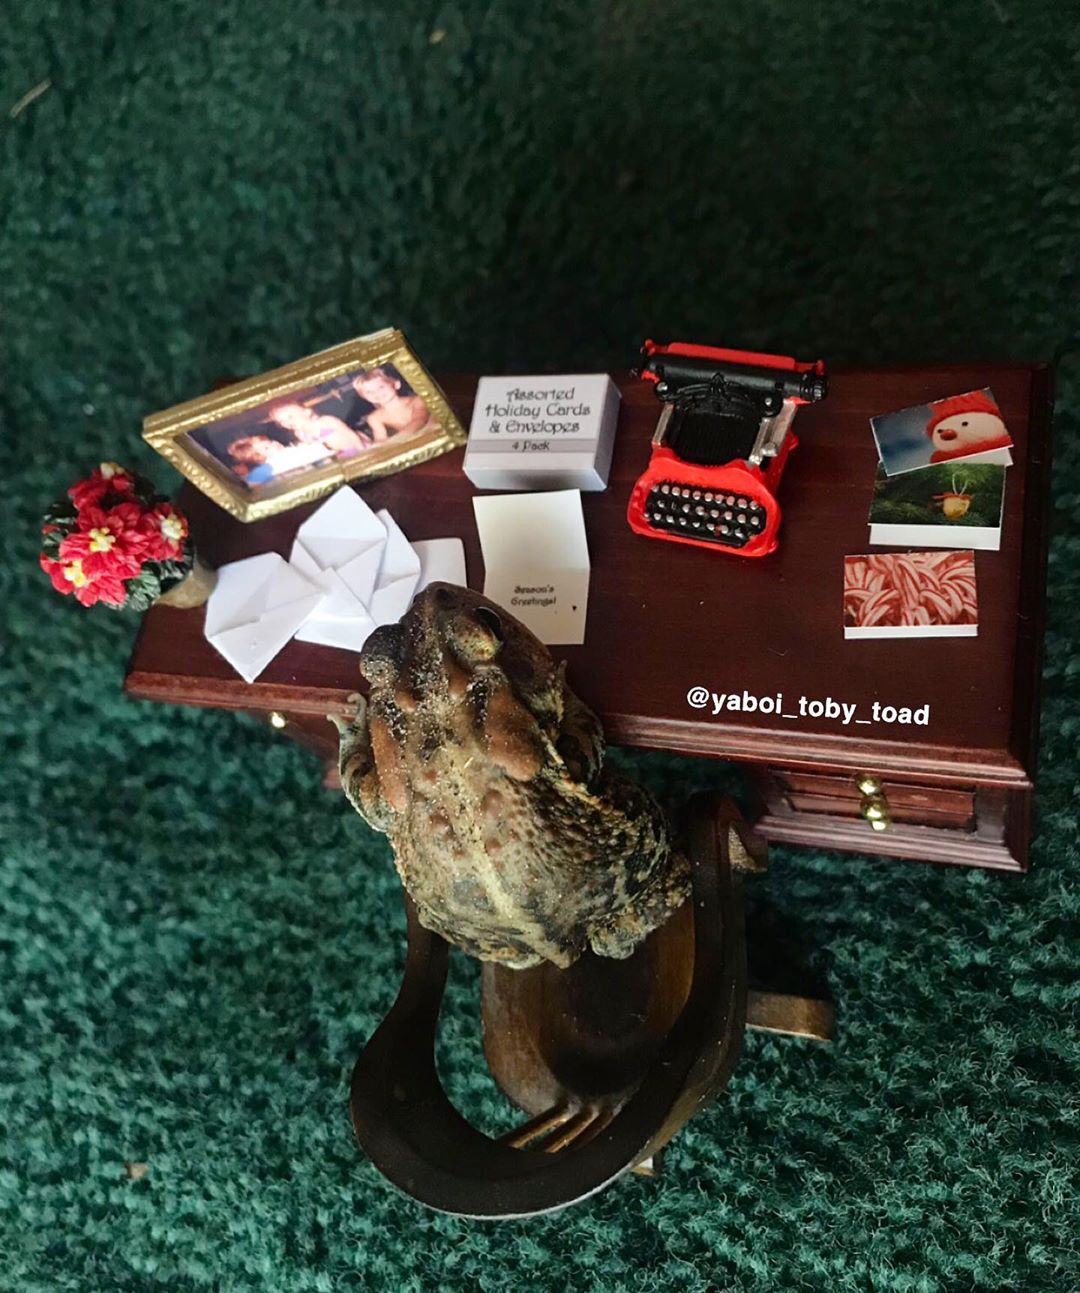 Жизнь и приключения одной жабы в Instagram